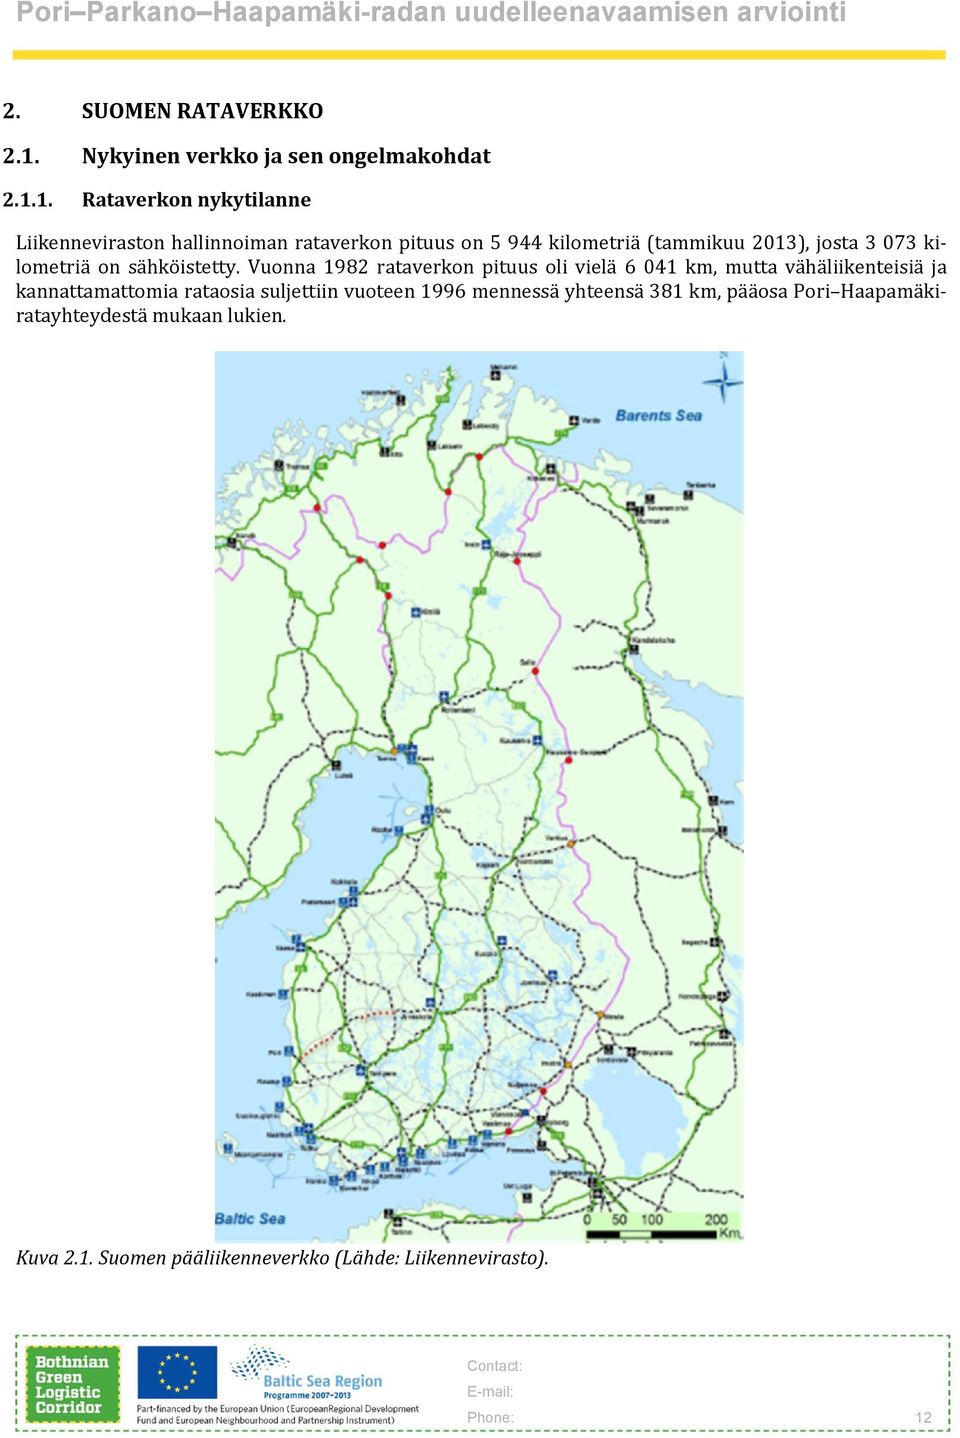 1. Rataverkon nykytilanne Liikenneviraston hallinnoiman rataverkon pituus on 5 944 kilometriä (tammikuu 2013), josta 3 073